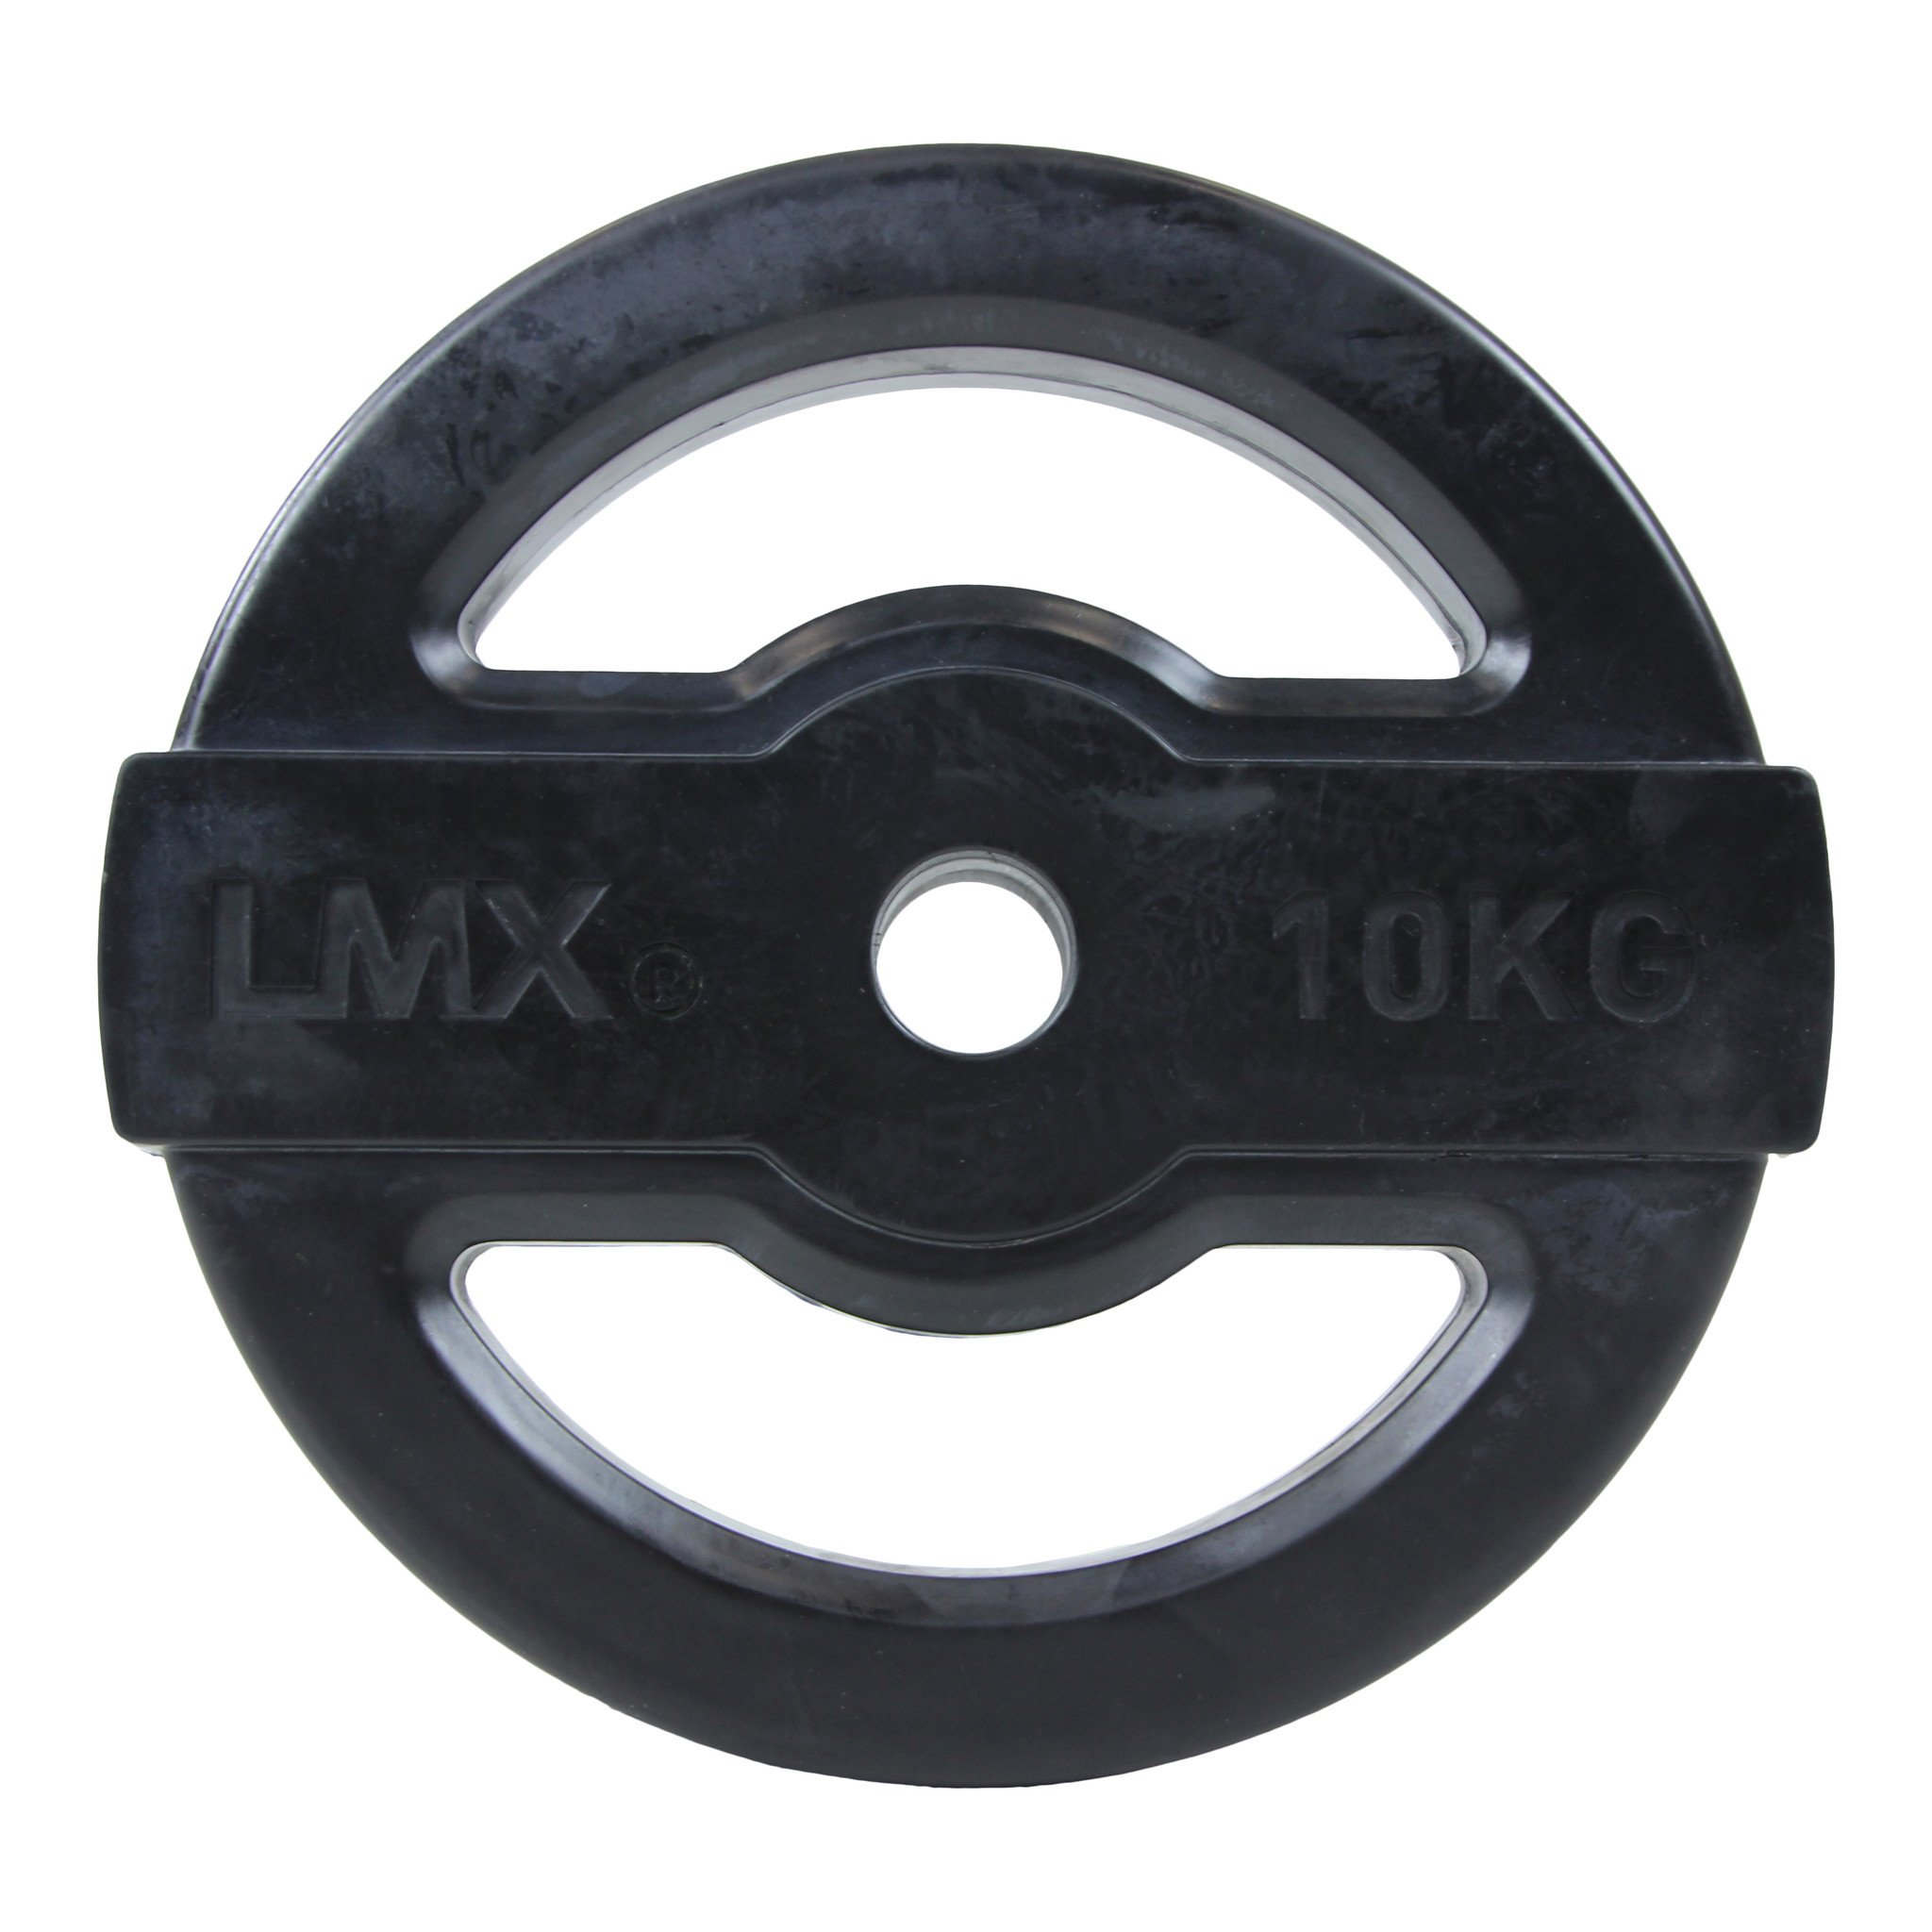 Brug LMX. Studio Bodypump Vægtskive 10 kg Black til en forbedret oplevelse